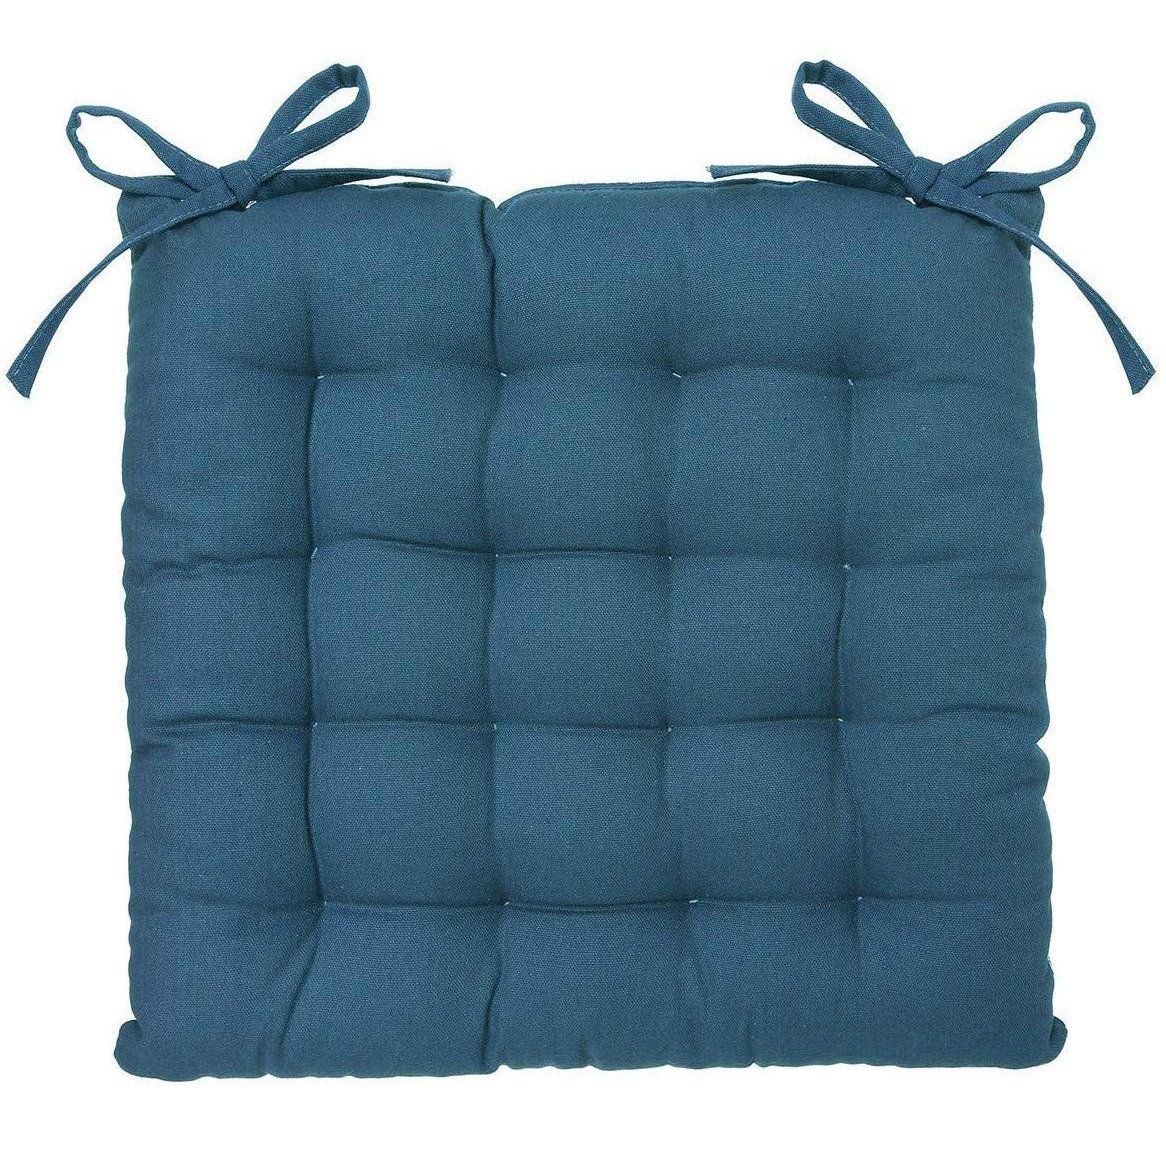 Atmosphera Modrý polštář na židli s bavlny, 38x38 cm - EMAKO.CZ s.r.o.